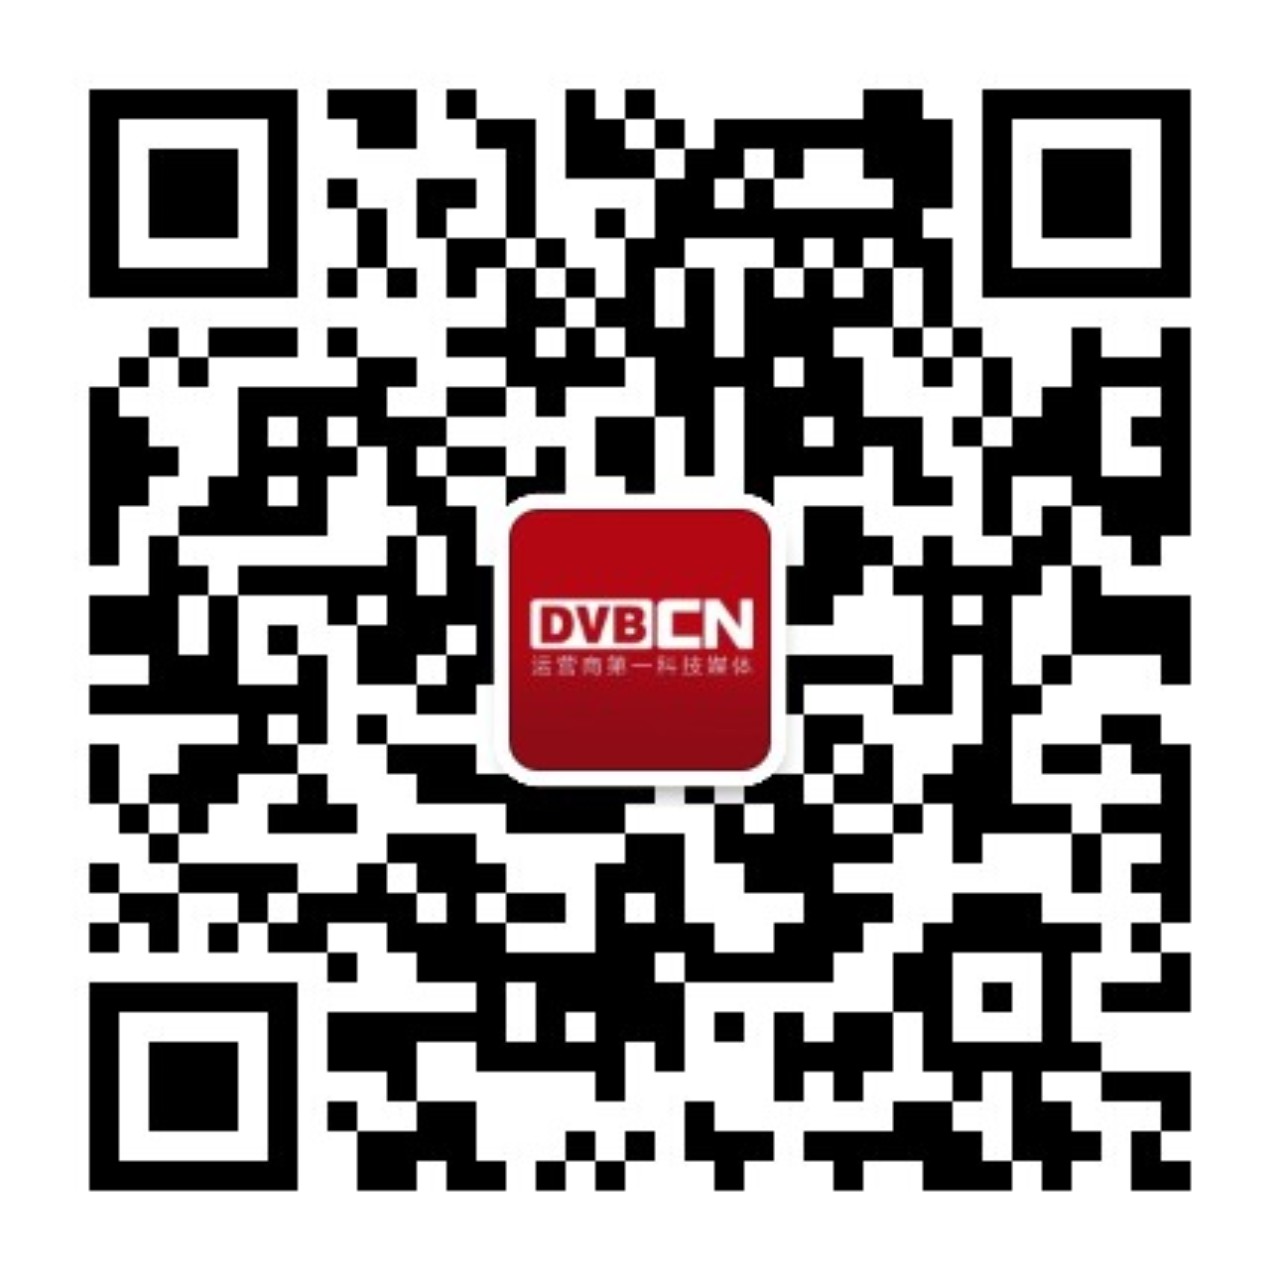 DVBCN二维码.jpg